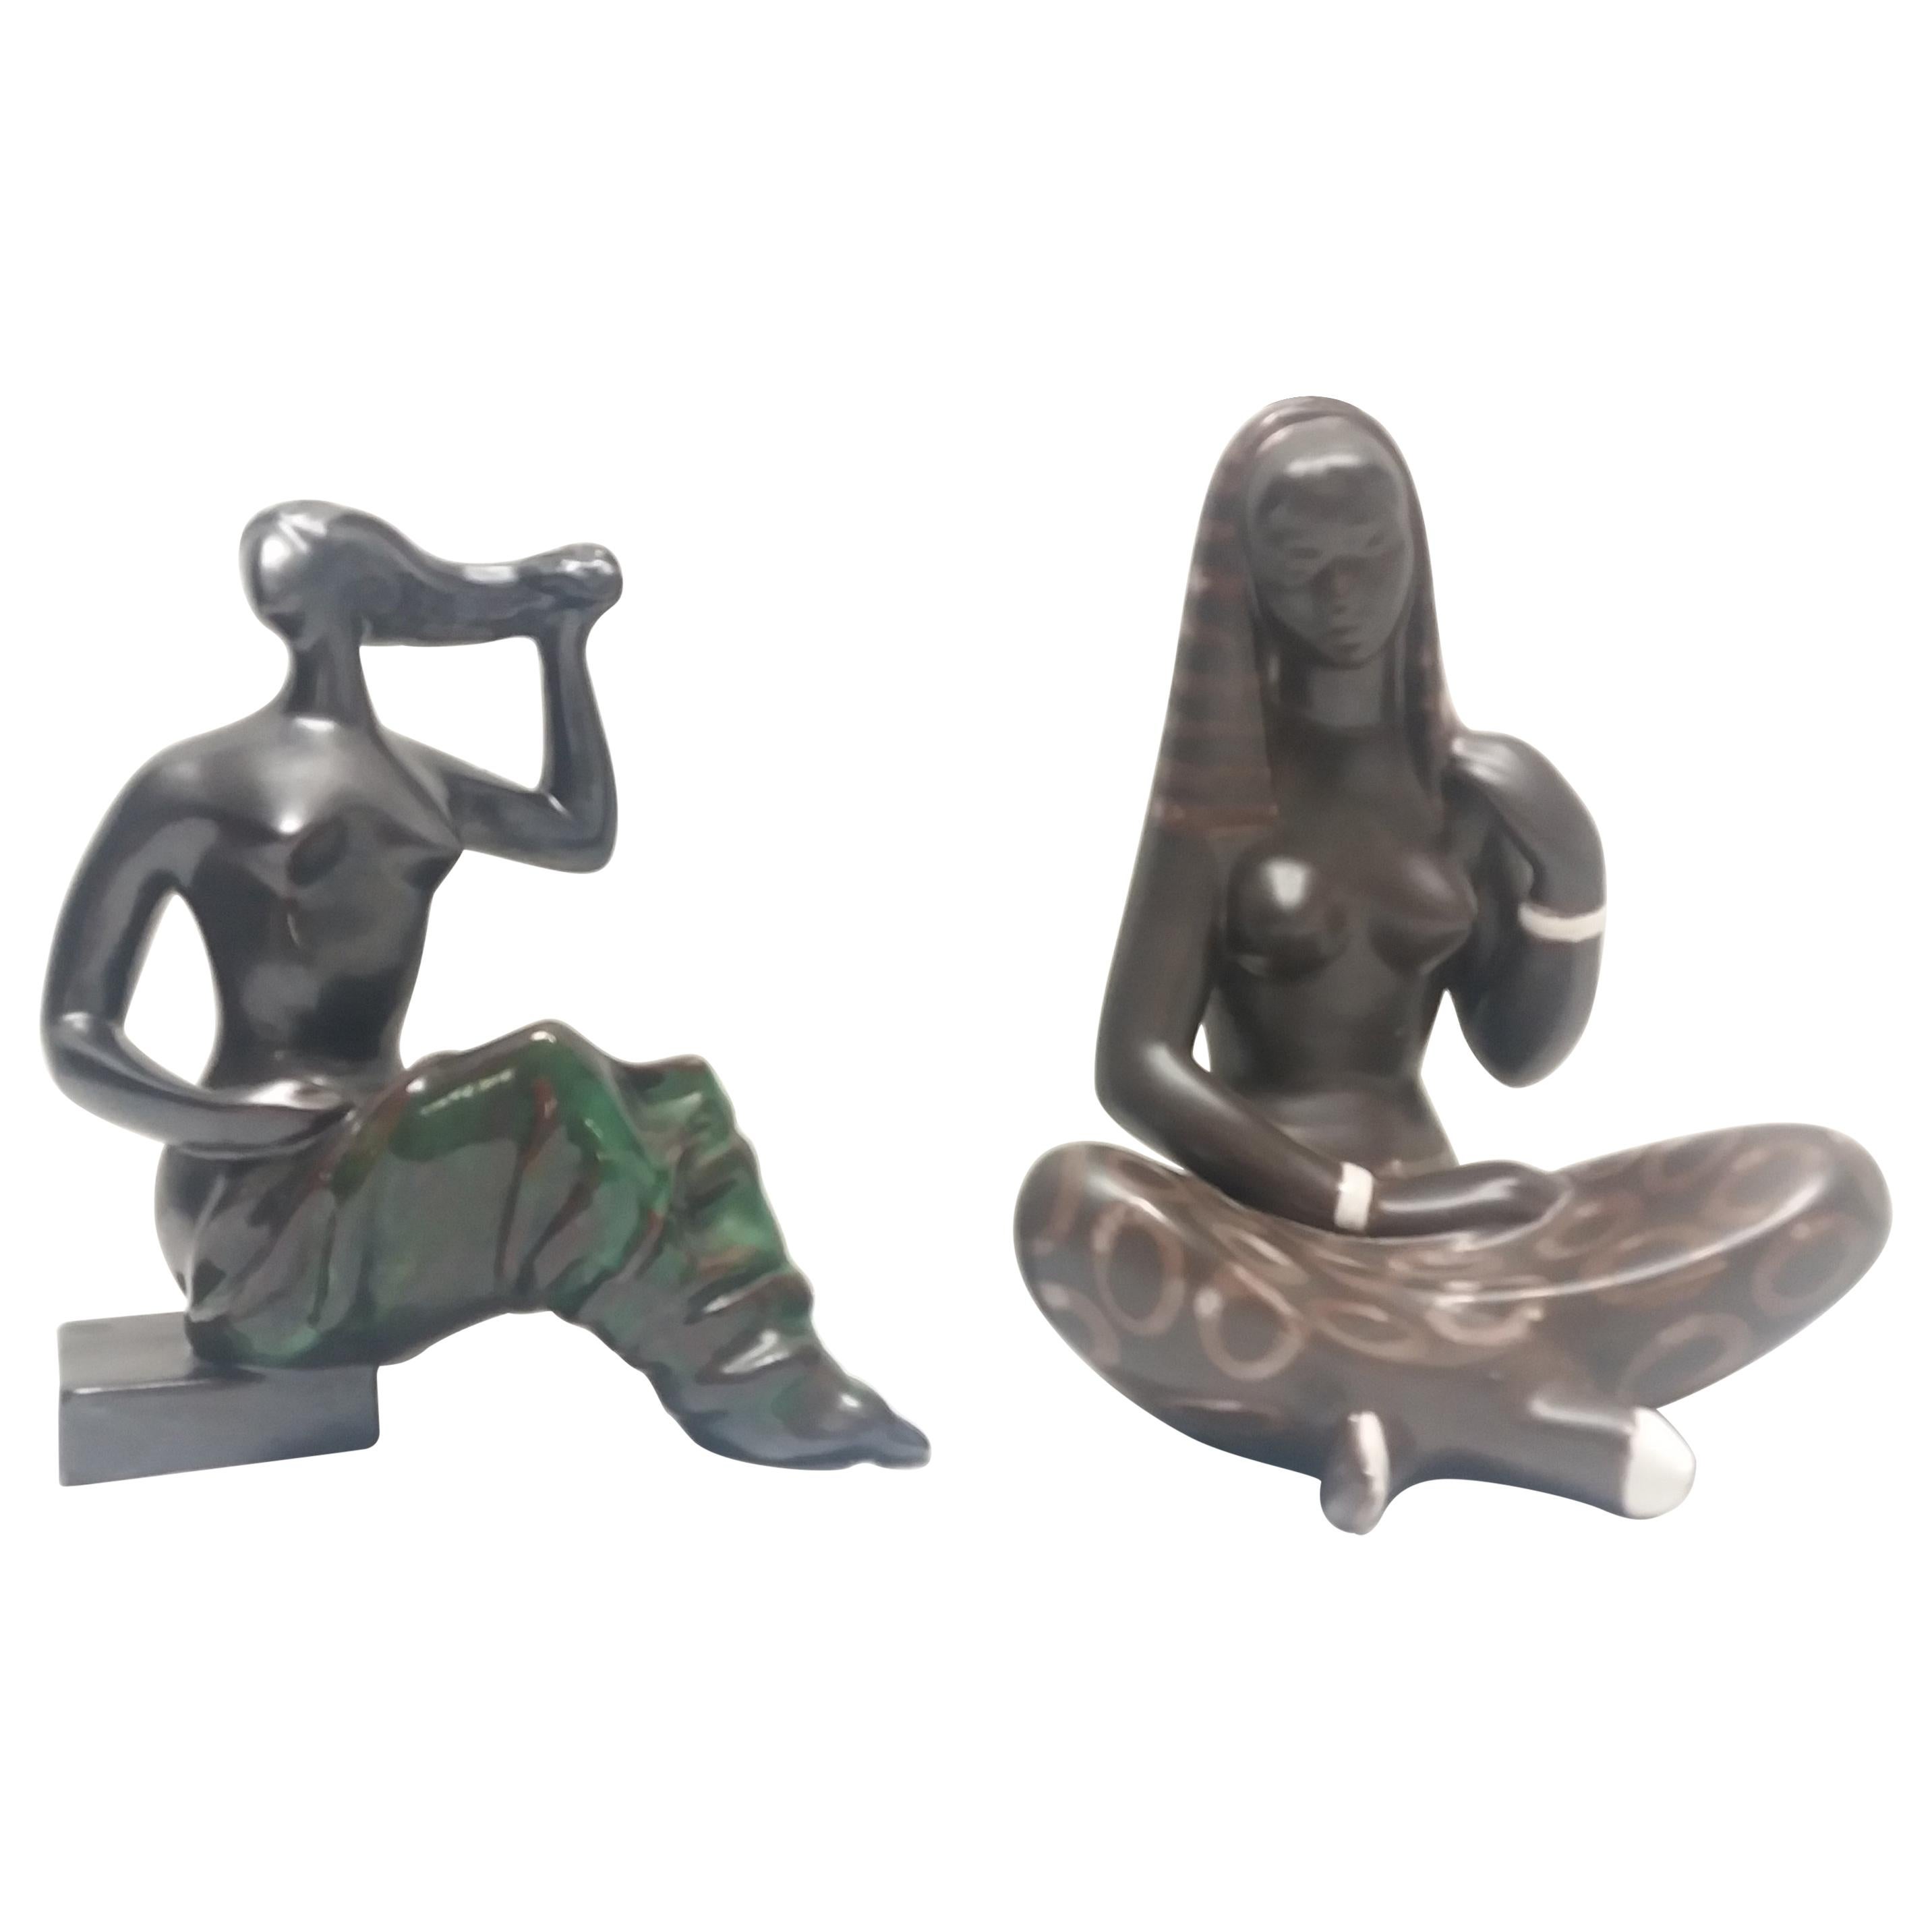 Midcentury Sculptures of Nude Women, 1960s For Sale